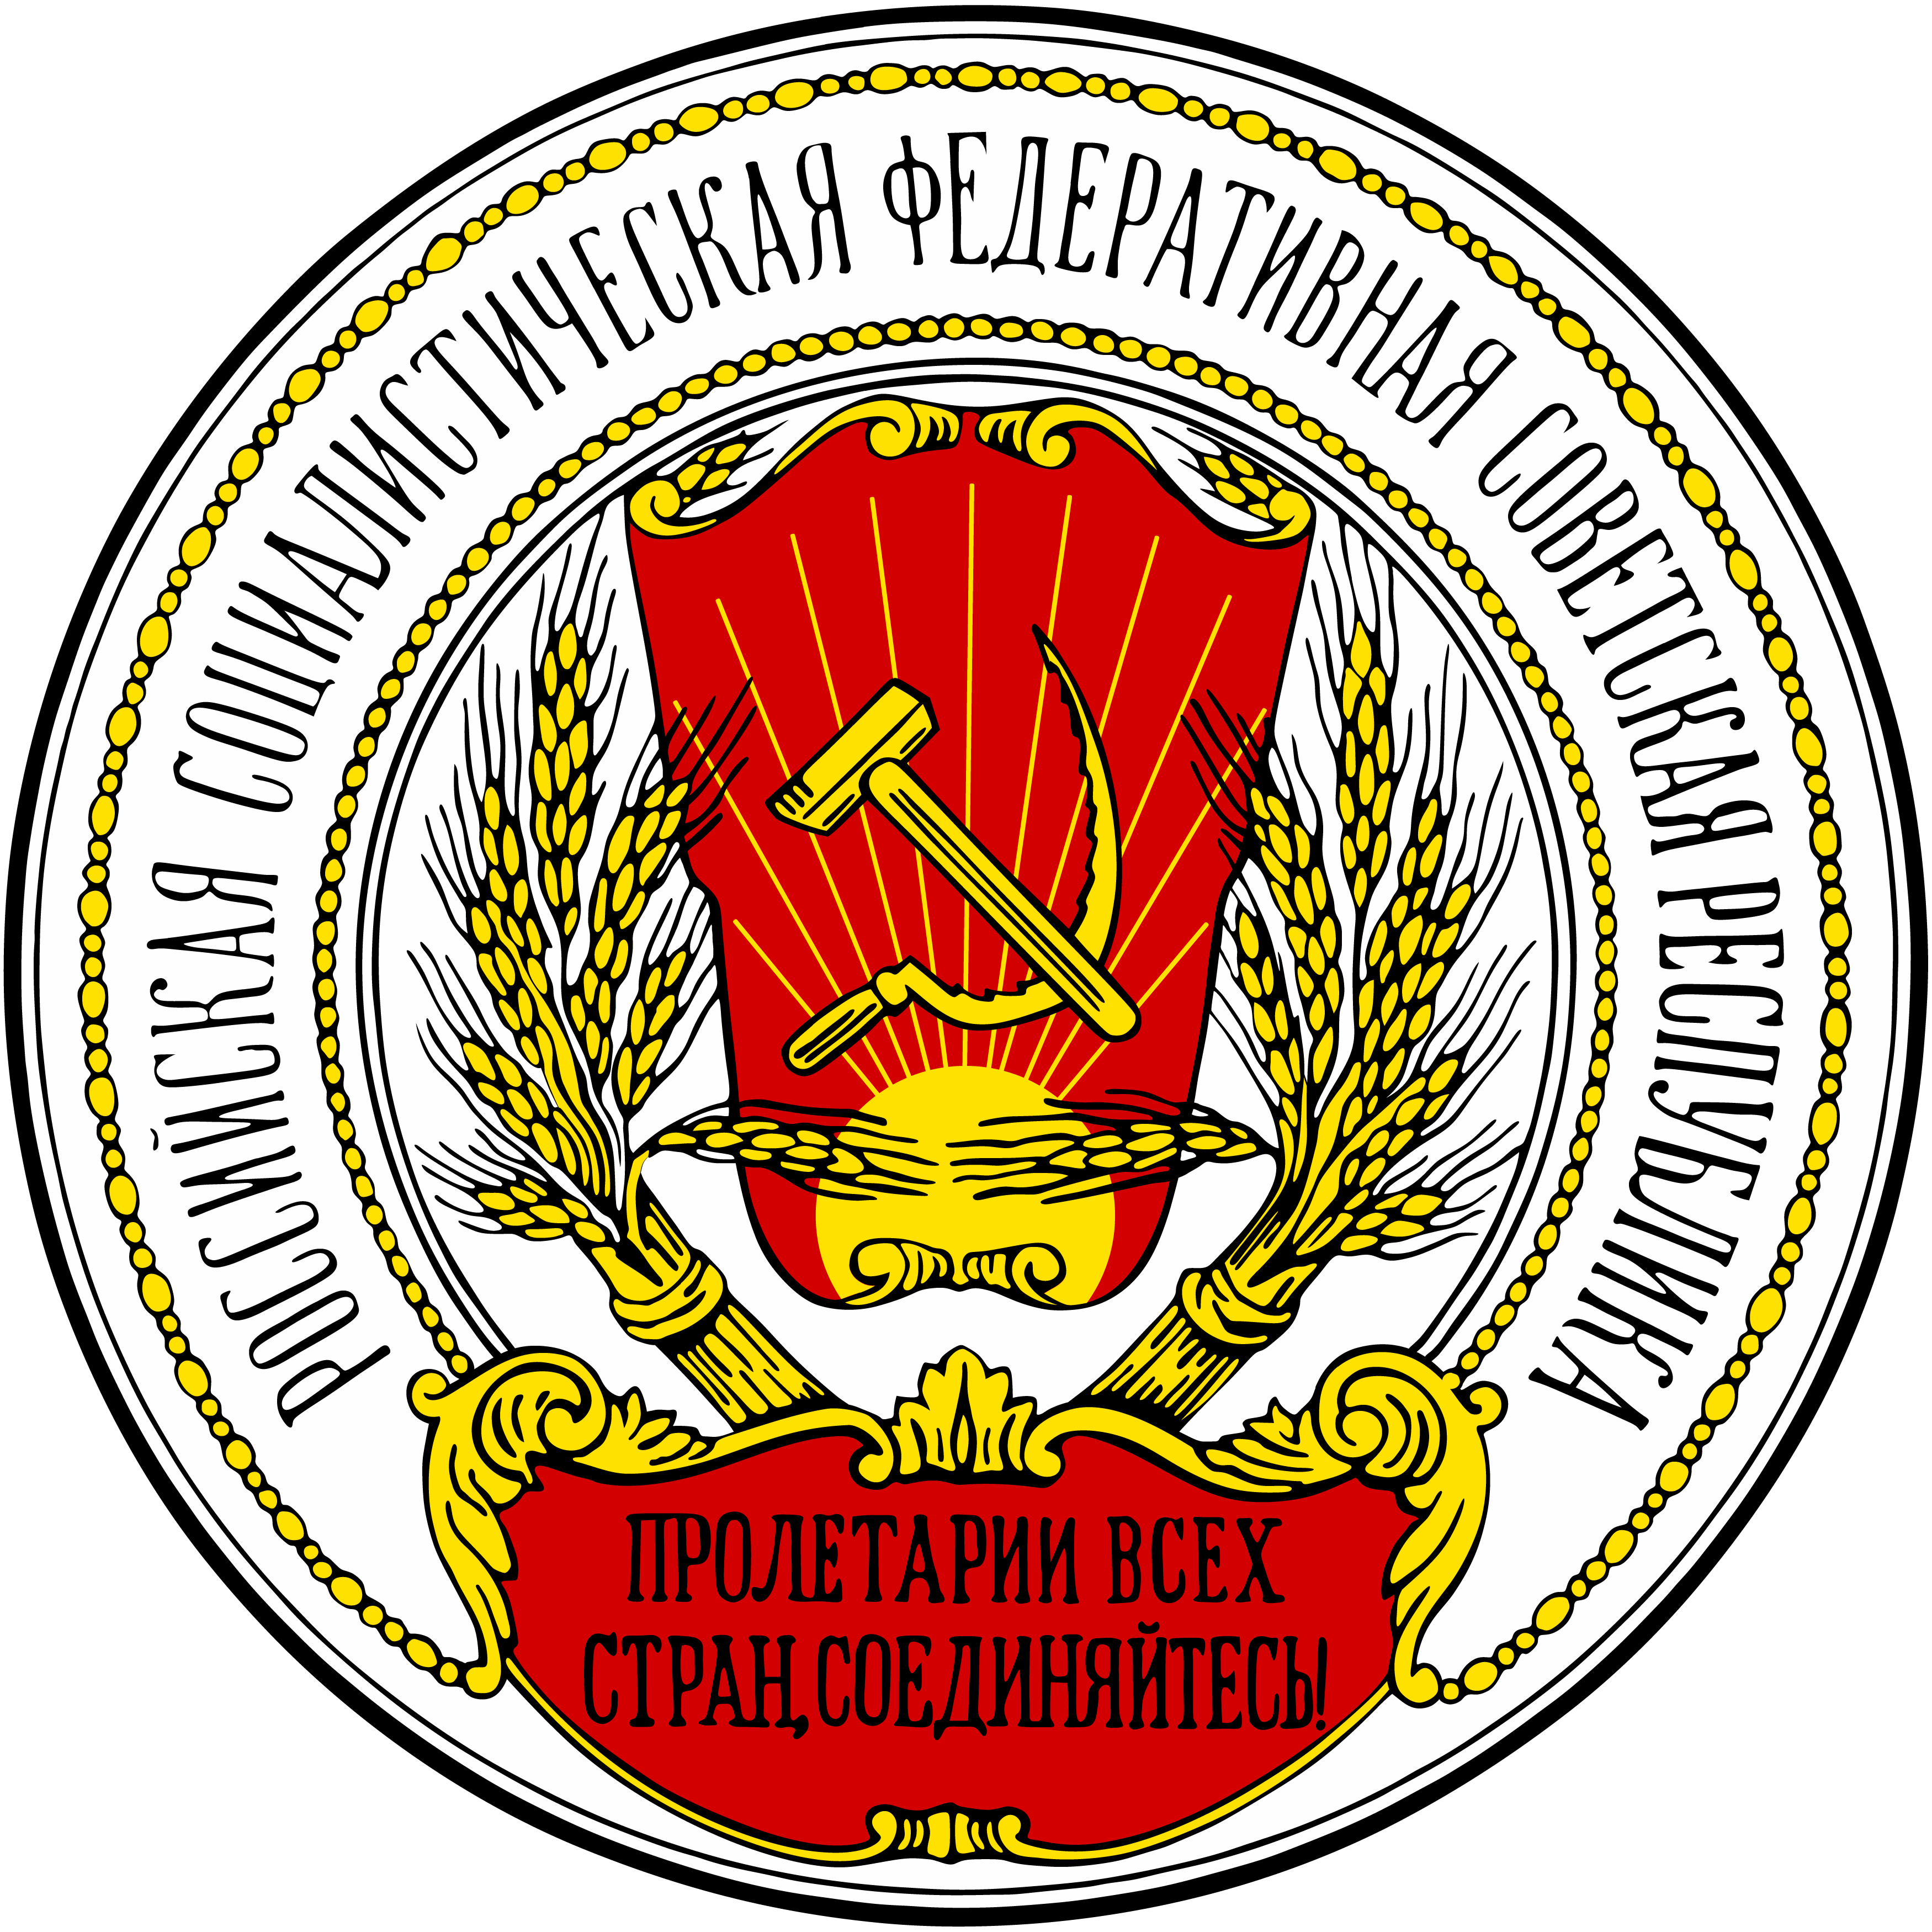 蘇俄國徽1920